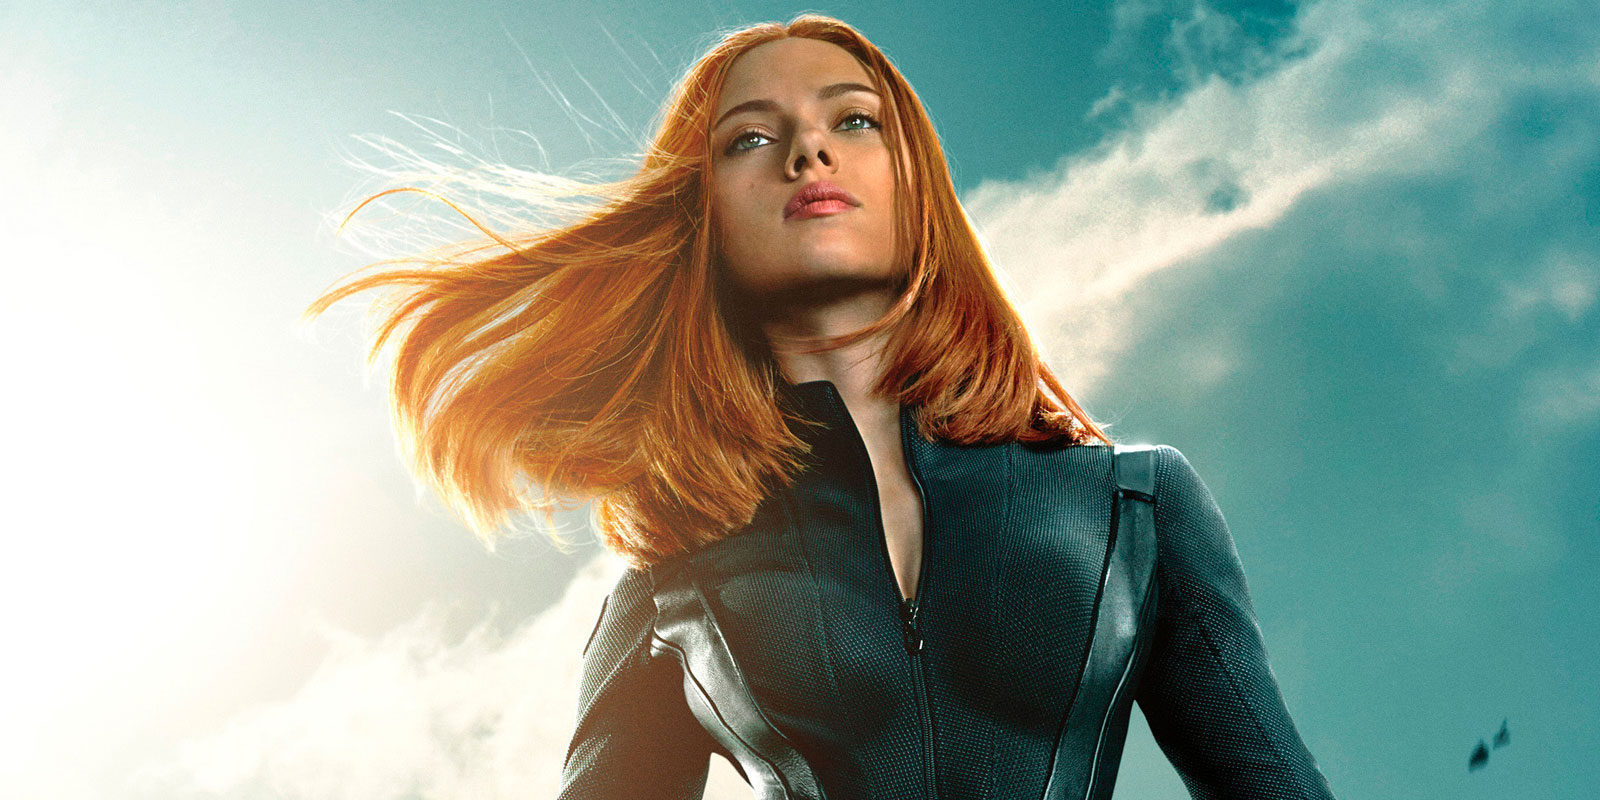 La película sobre Viuda Negra llegaría en 2020 con Scarlett Johansson